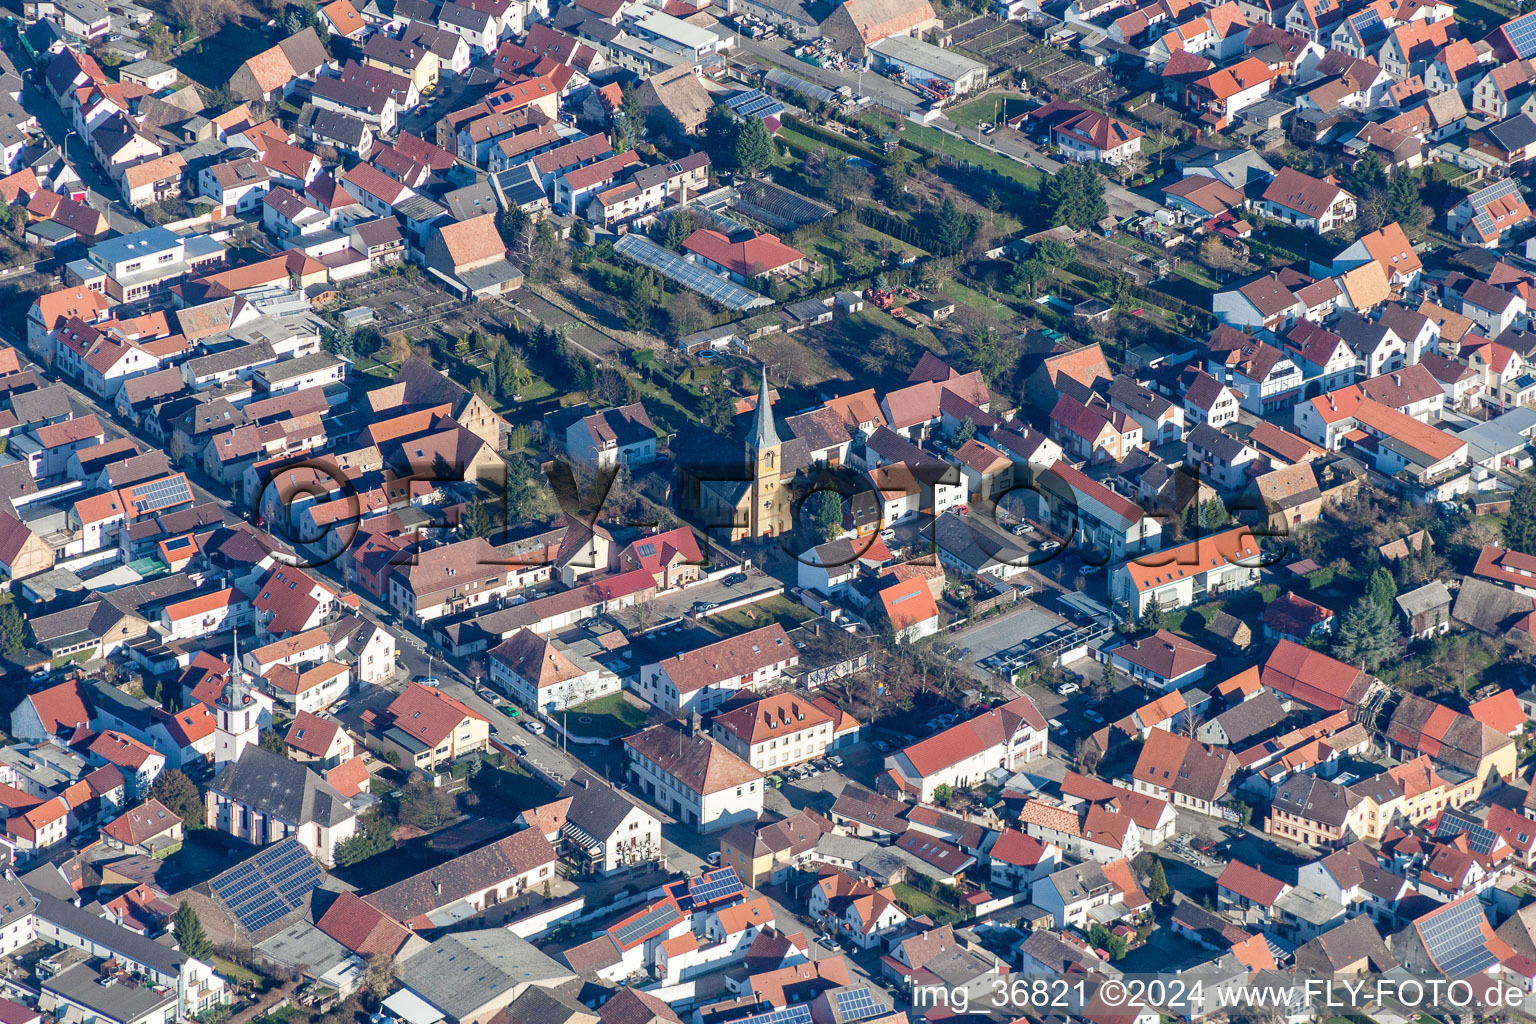 Vue aérienne de Bâtiment d'église au centre du village à le quartier Mechtersheim in Römerberg dans le département Rhénanie-Palatinat, Allemagne